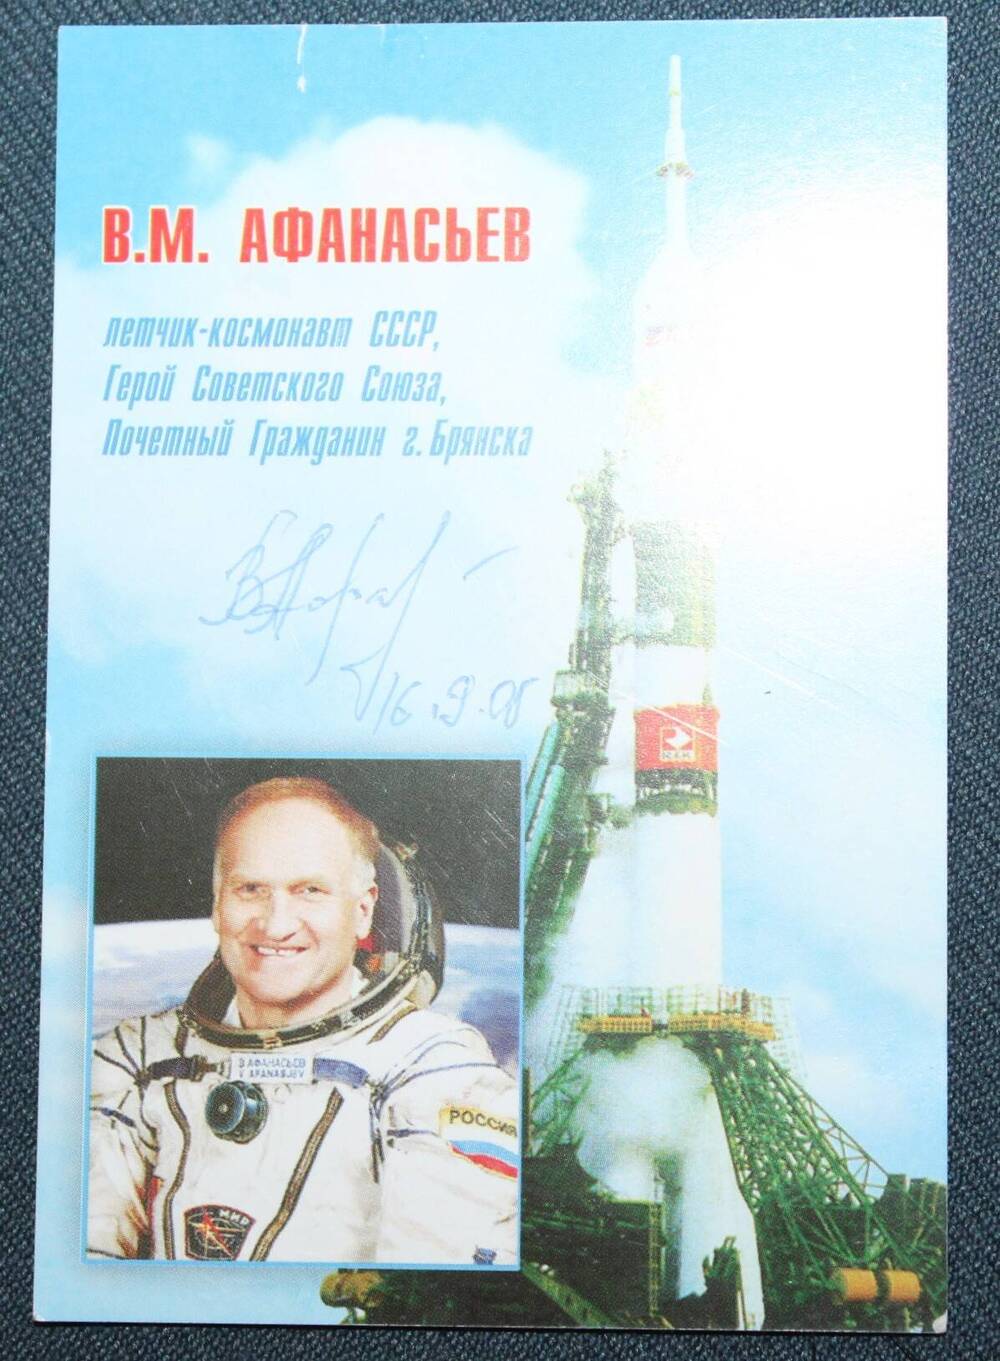 Календарь карманный на 2008 г. с автографом В.М. Афанасьева